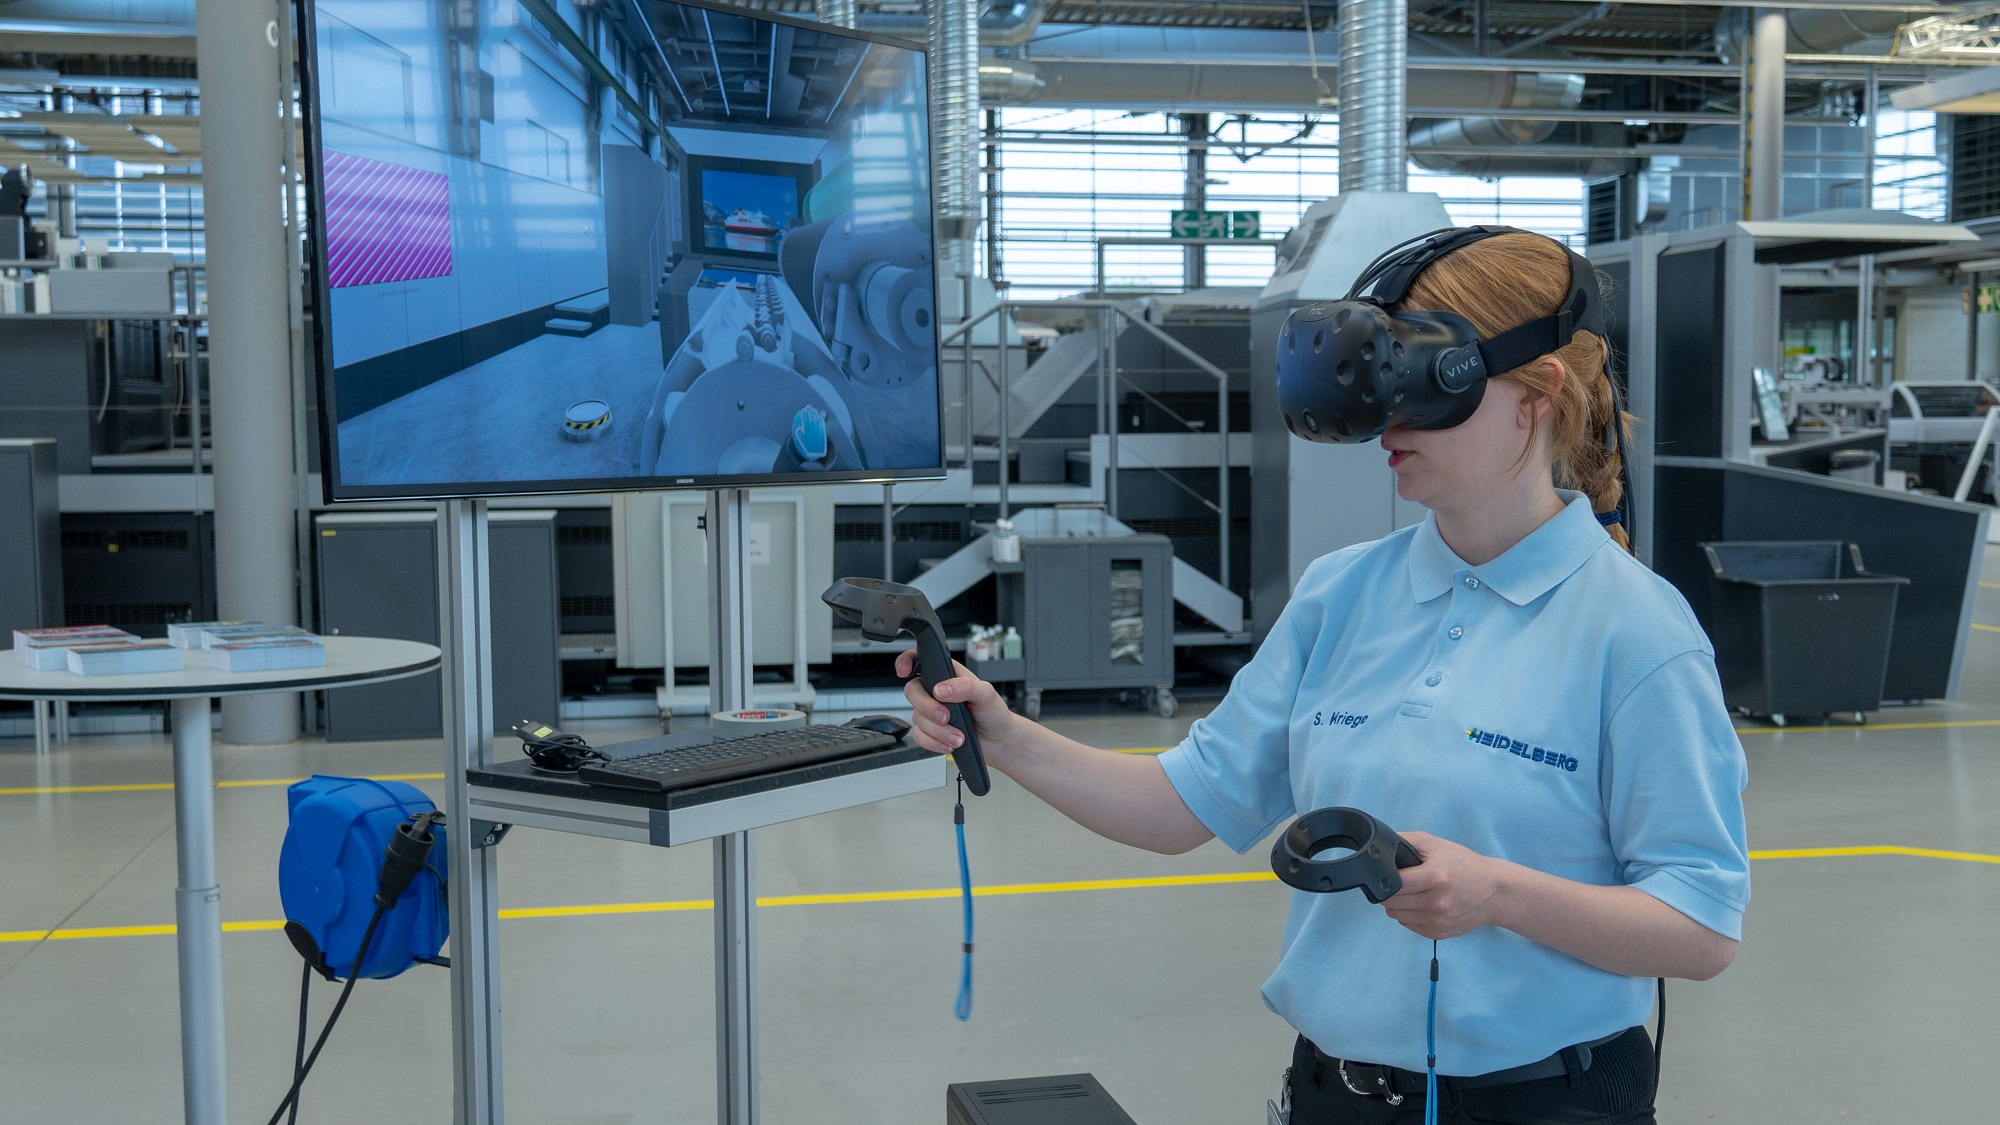 Телефон центра подготовки. VR тренажеры на производстве. Виртуальная реальность в образовании. Персонал в виртуальной реальности. VR технологии в образовании.